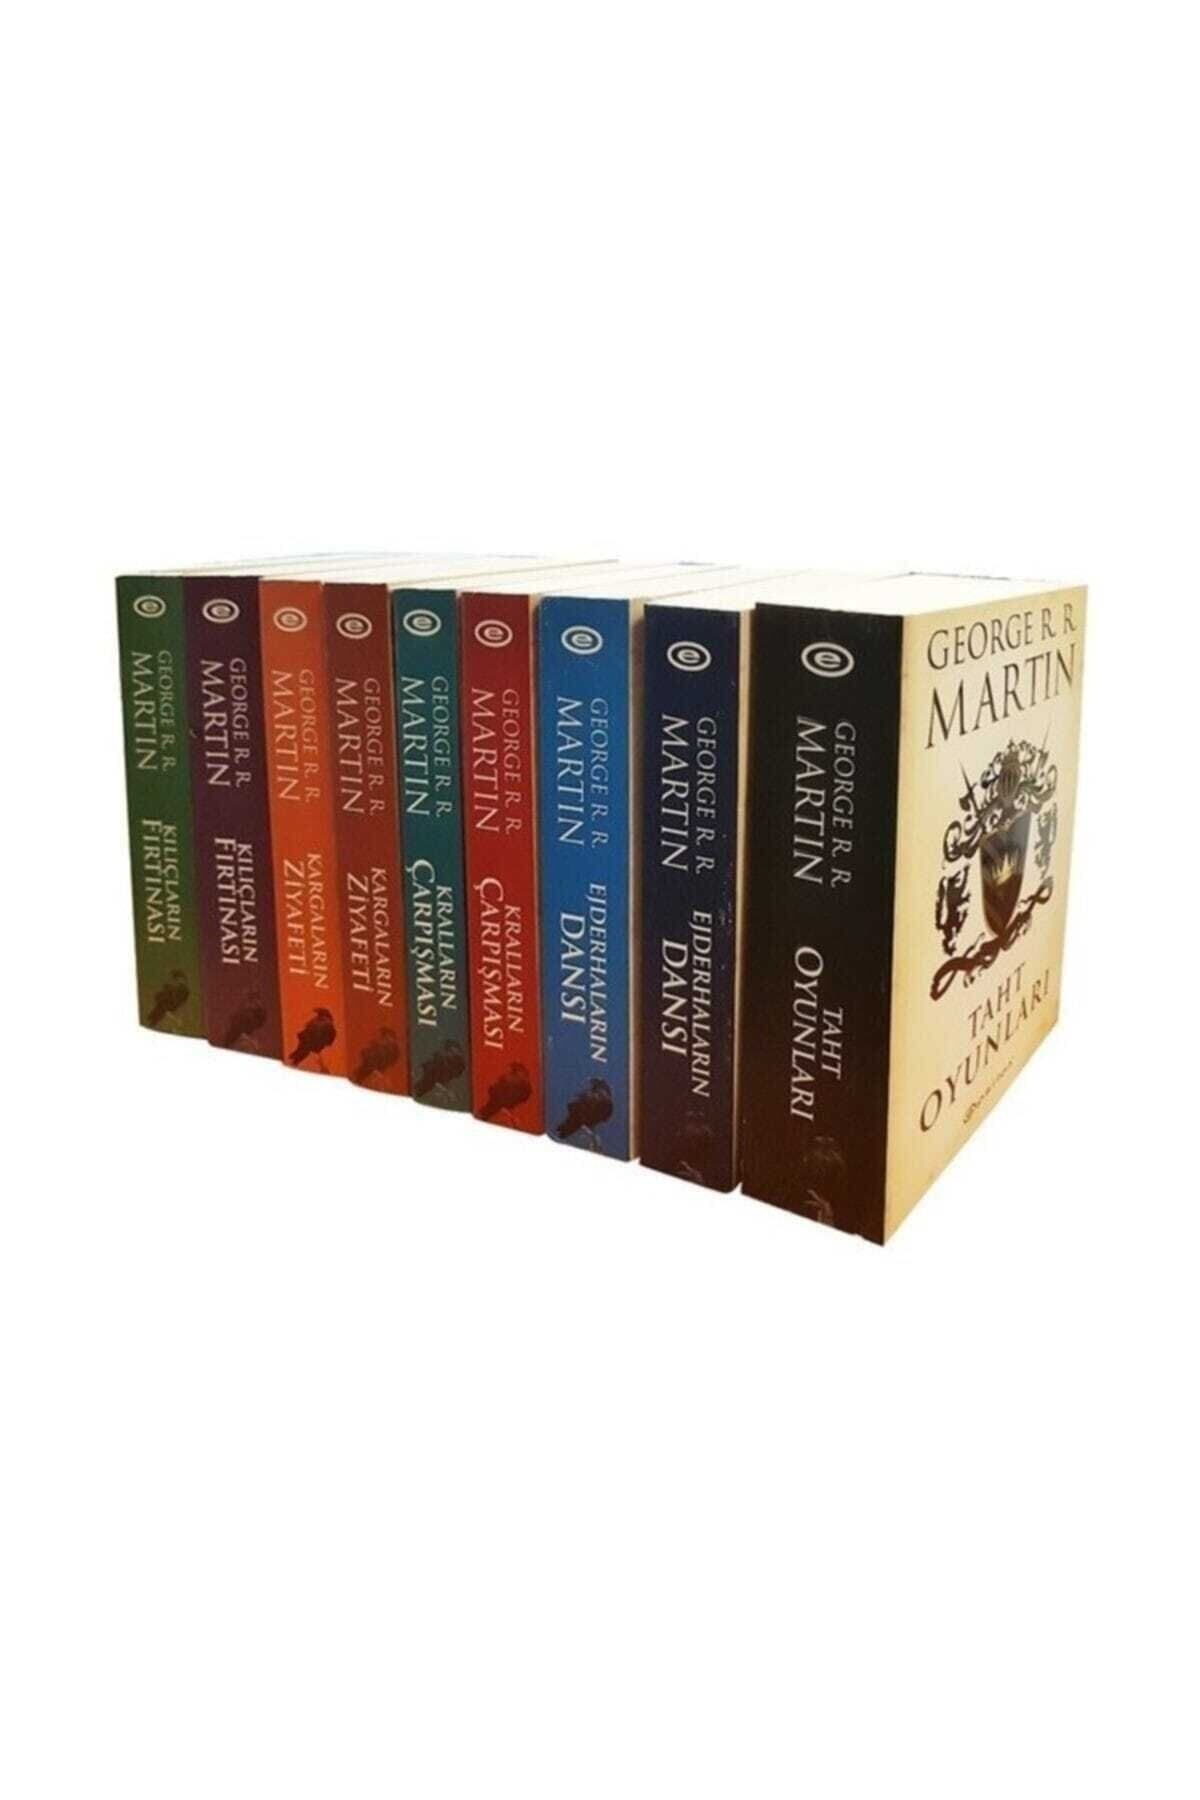 Epsilon Yayınevi A Game Of Thrones / Taht Oyunları Seti (9 Kitap) (kutulu) - George R. R. Martin